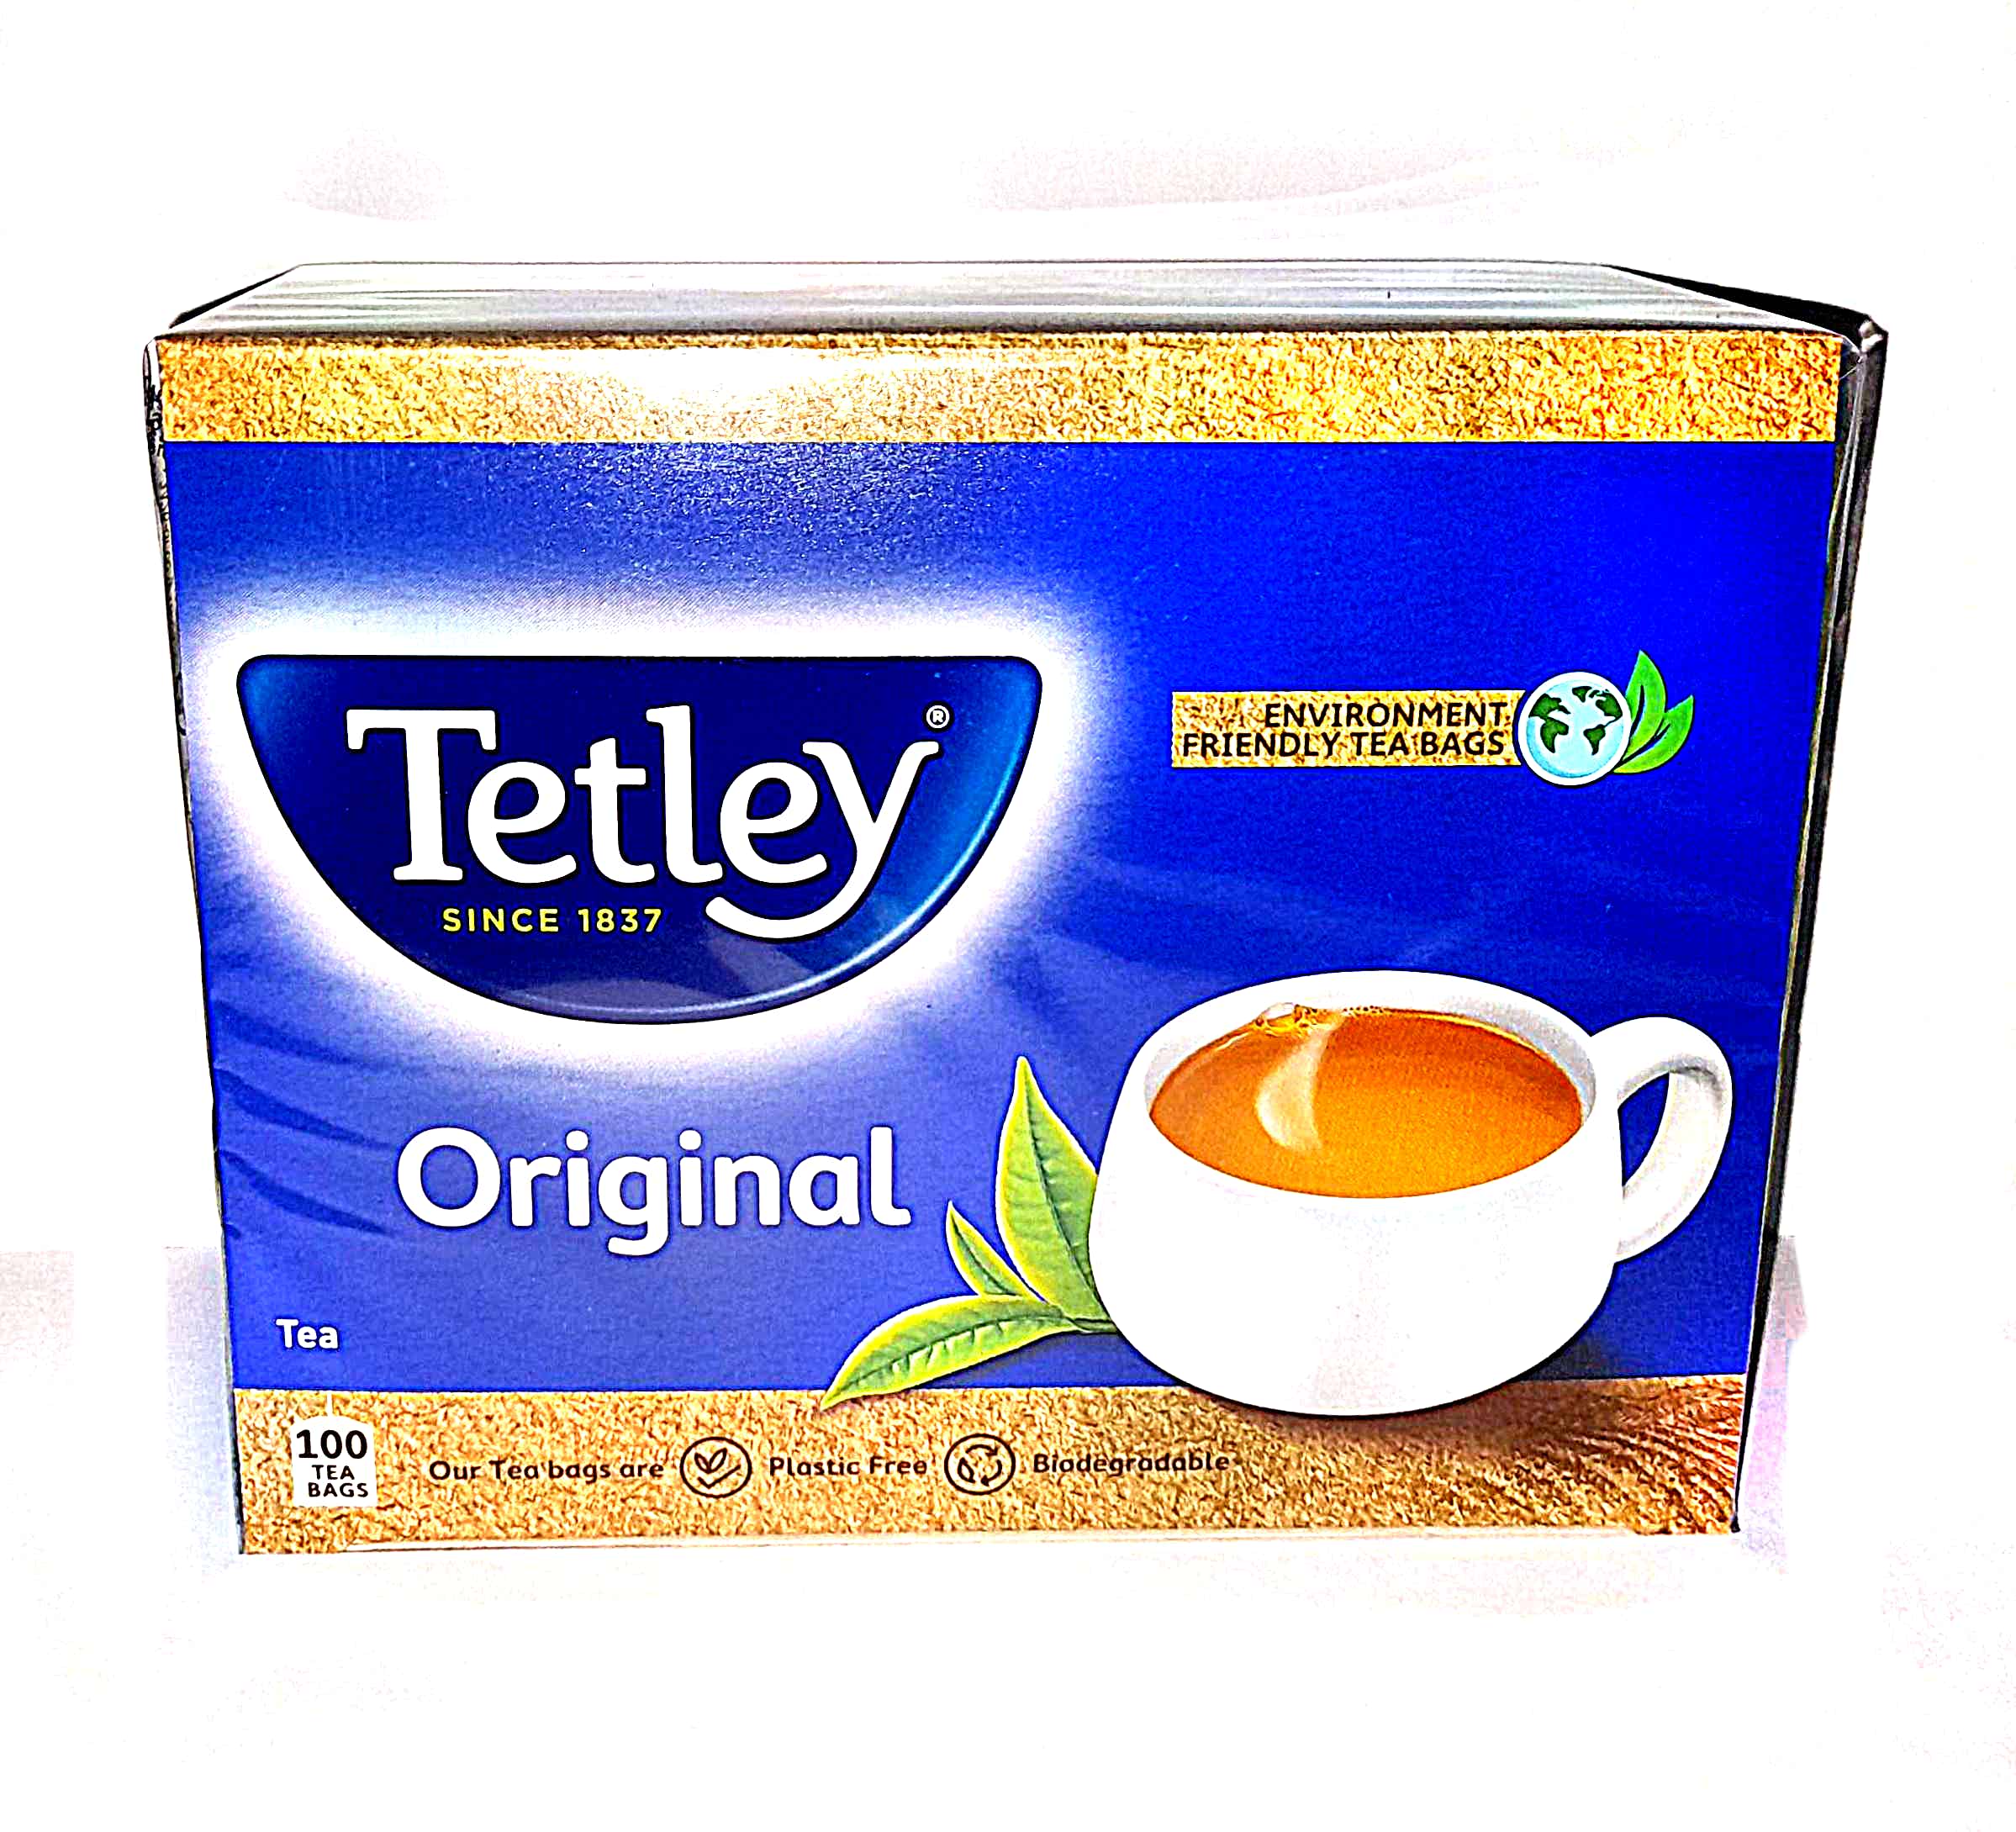 Tetley Original 100 Tea Bags- Tea- Beverage - Daily Essentials